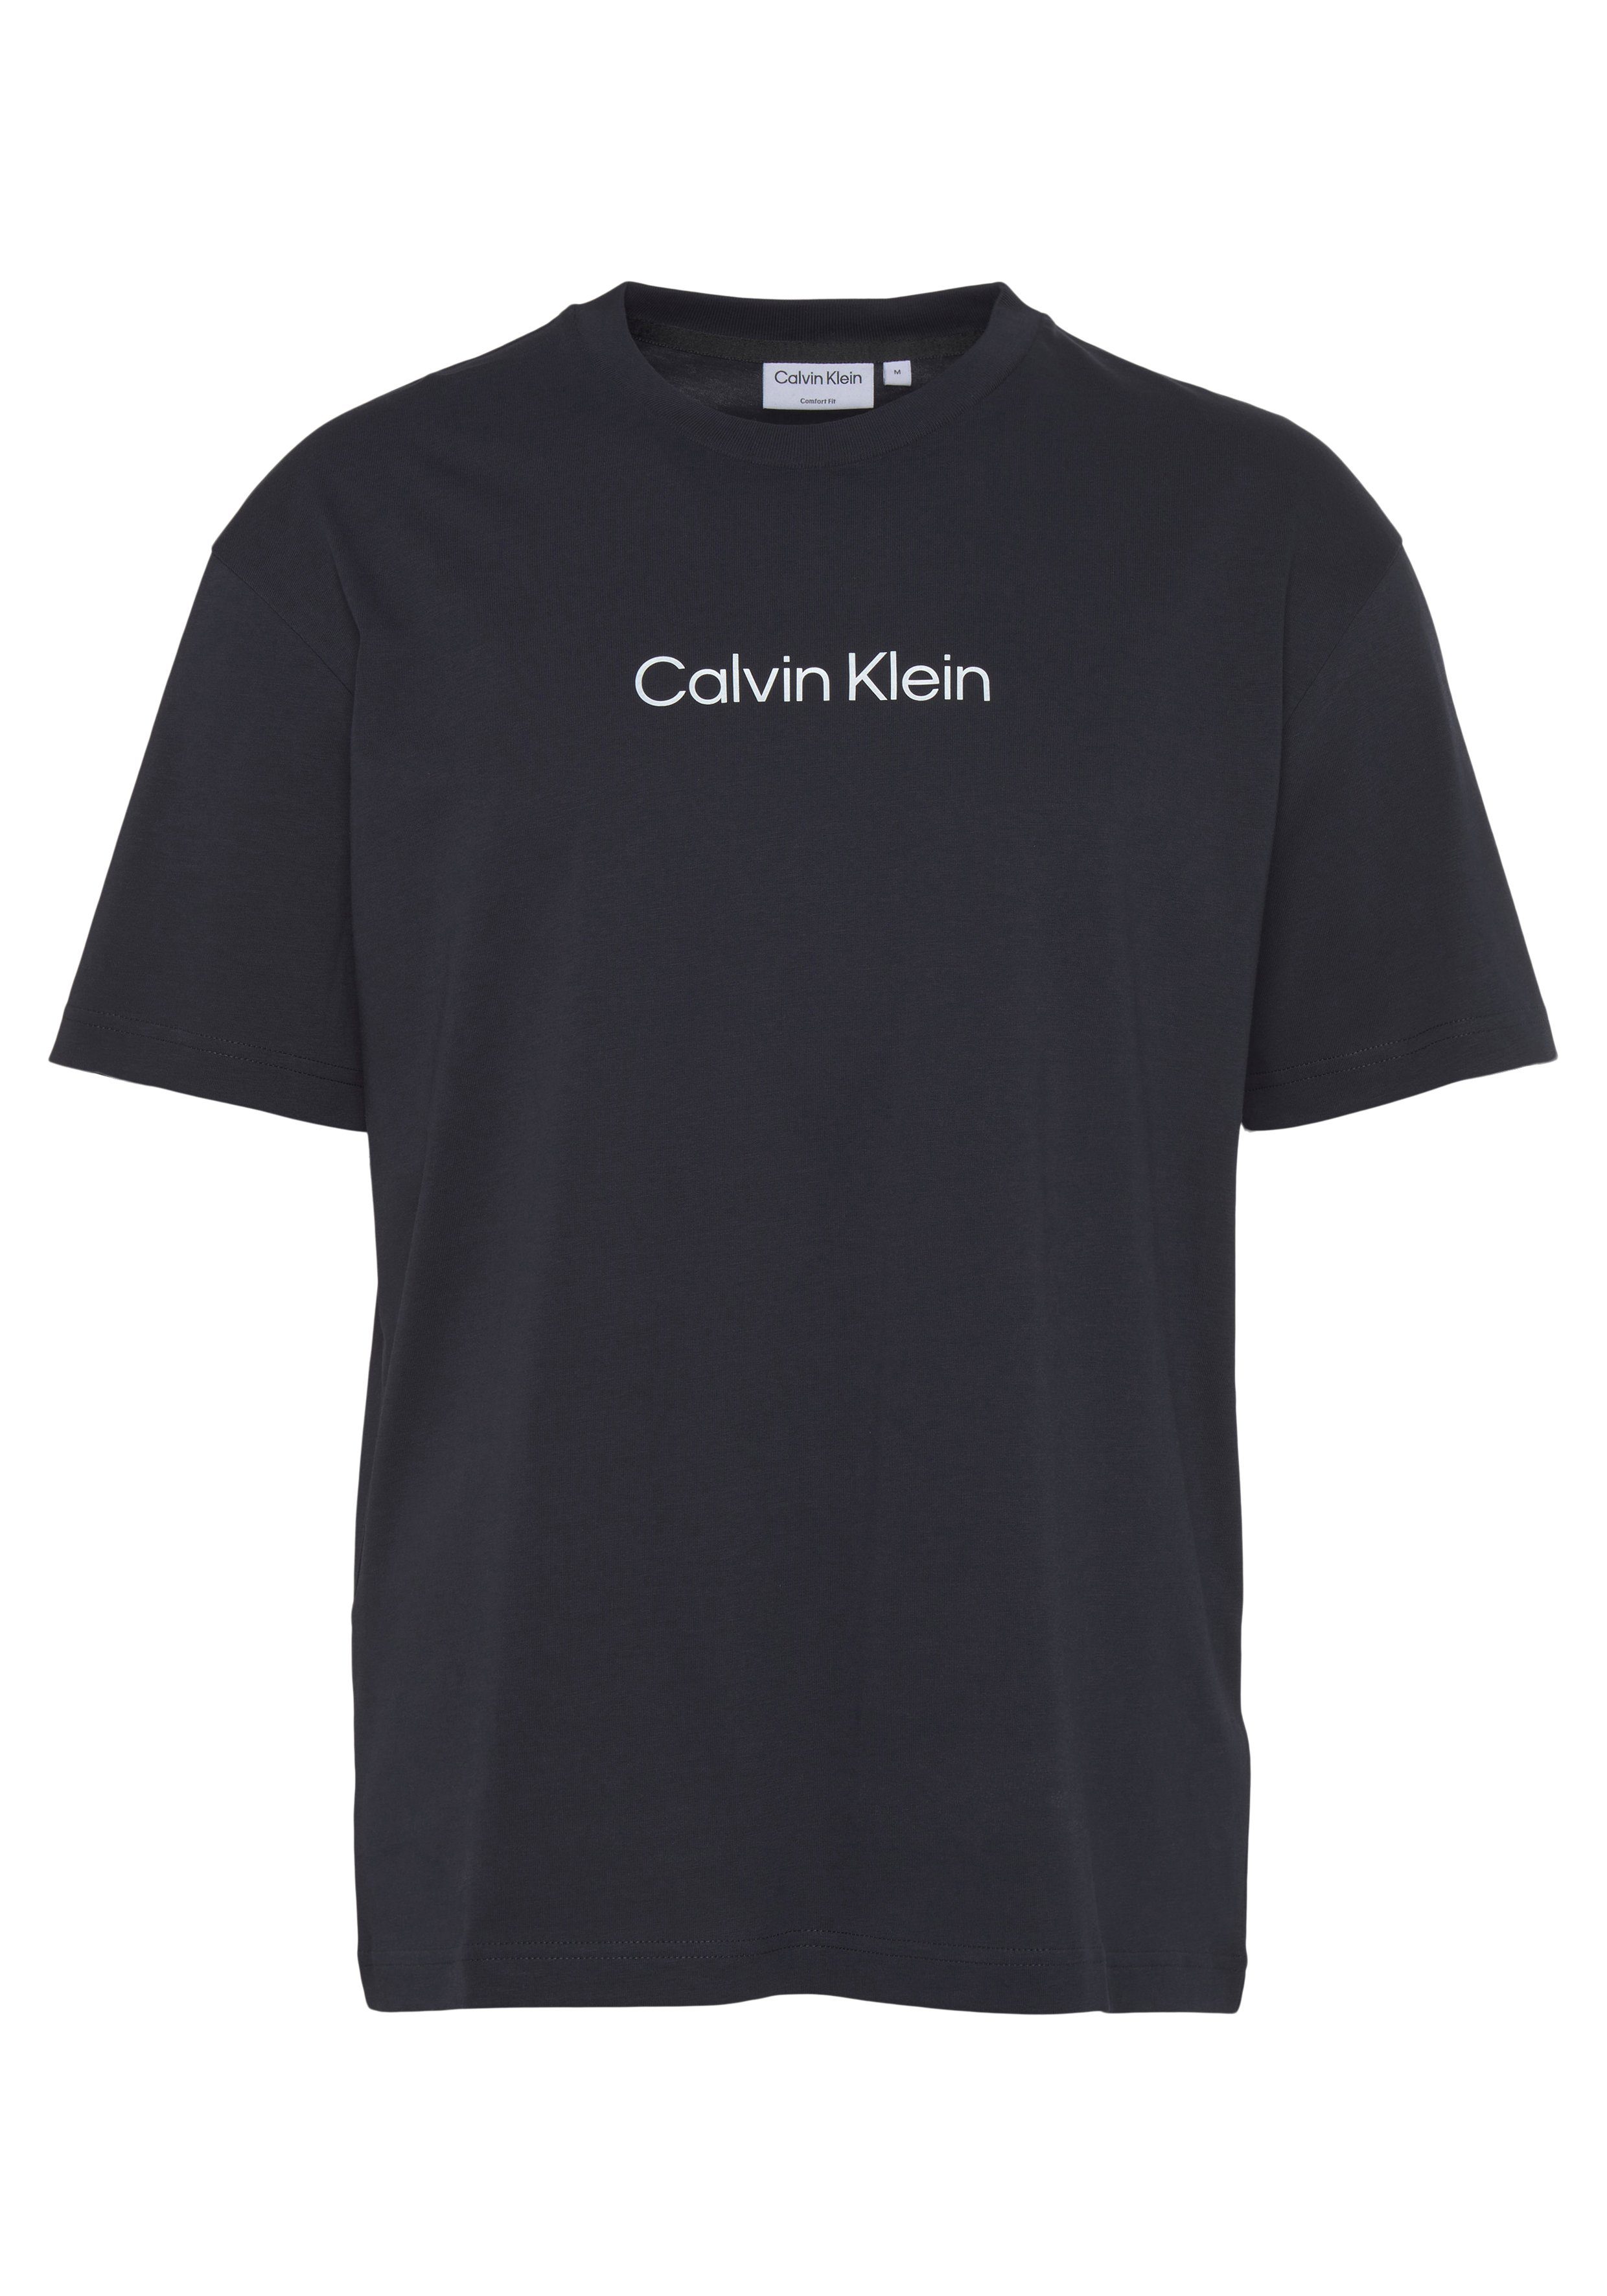 mit T-SHIRT LOGO Markenlabel Klein Night COMFORT HERO aufgedrucktem T-Shirt Sky Calvin